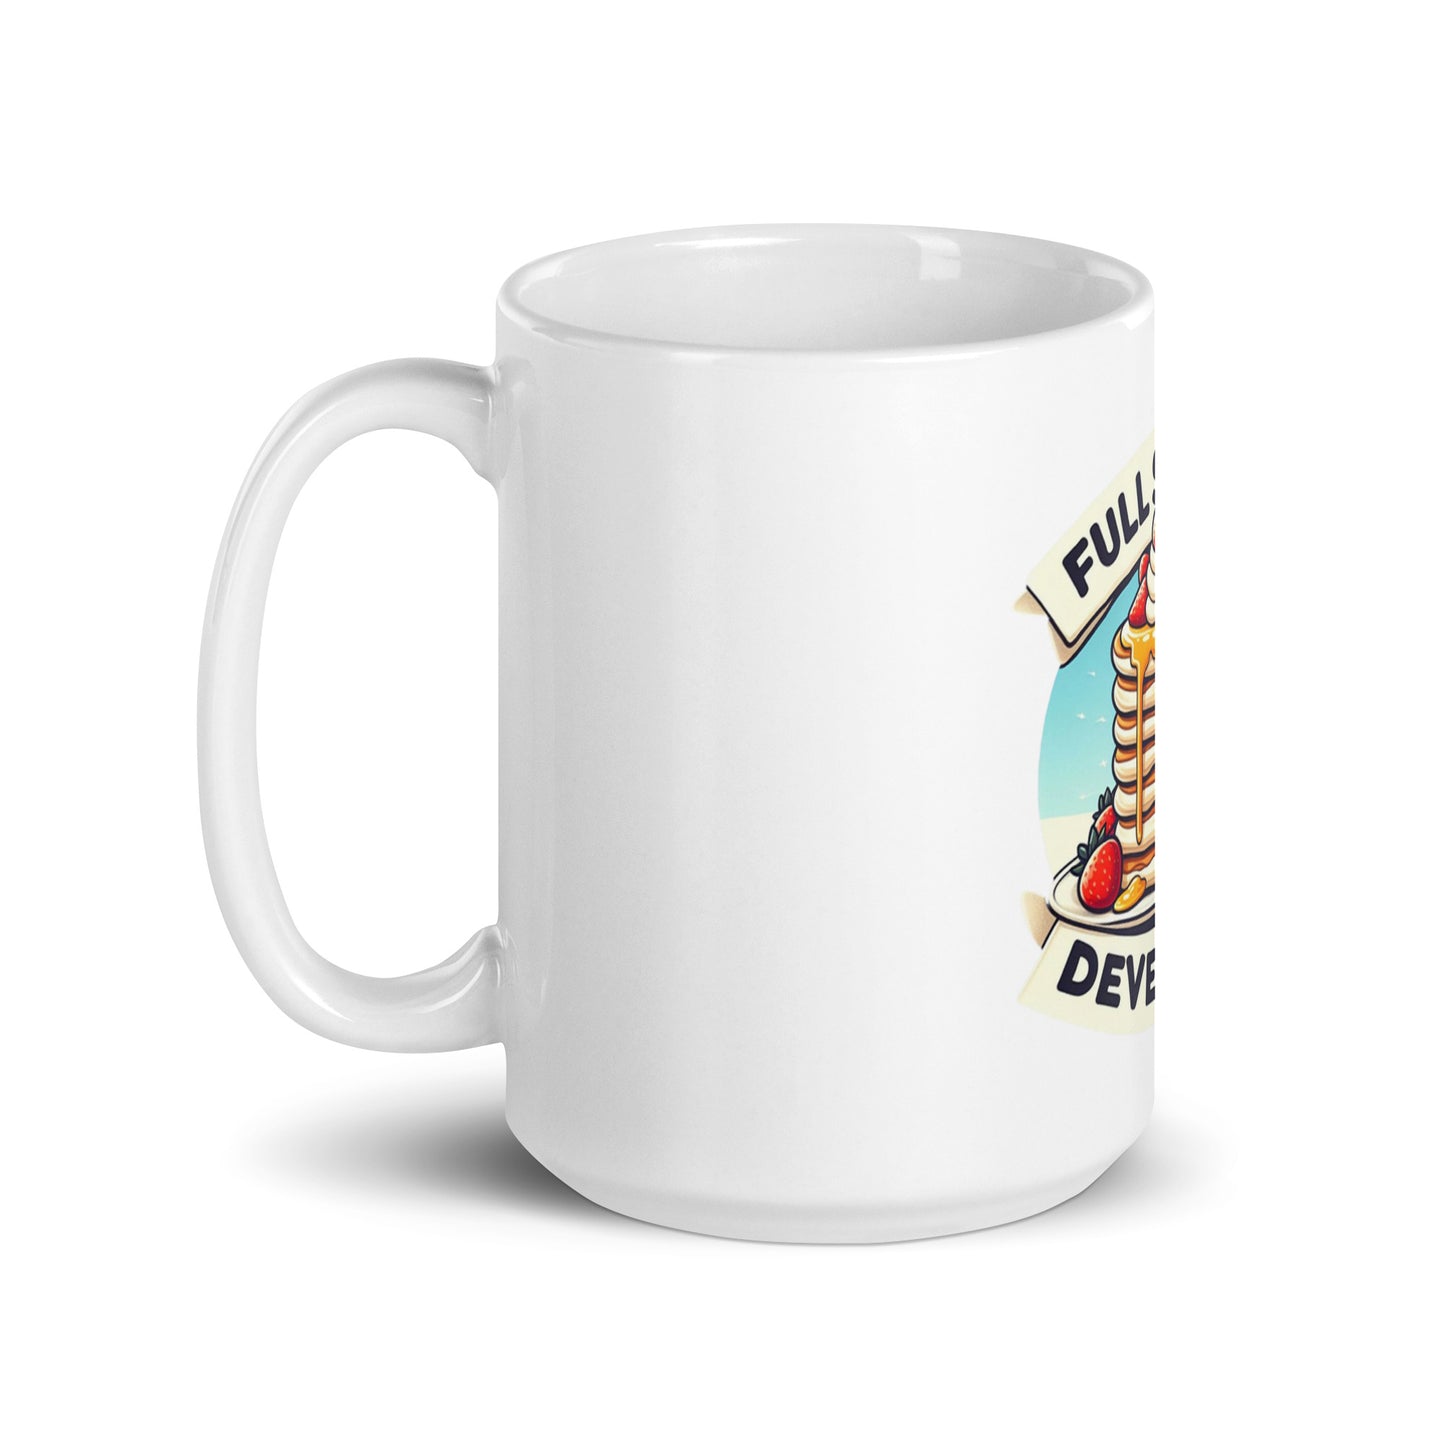 Fullstack Developer mug